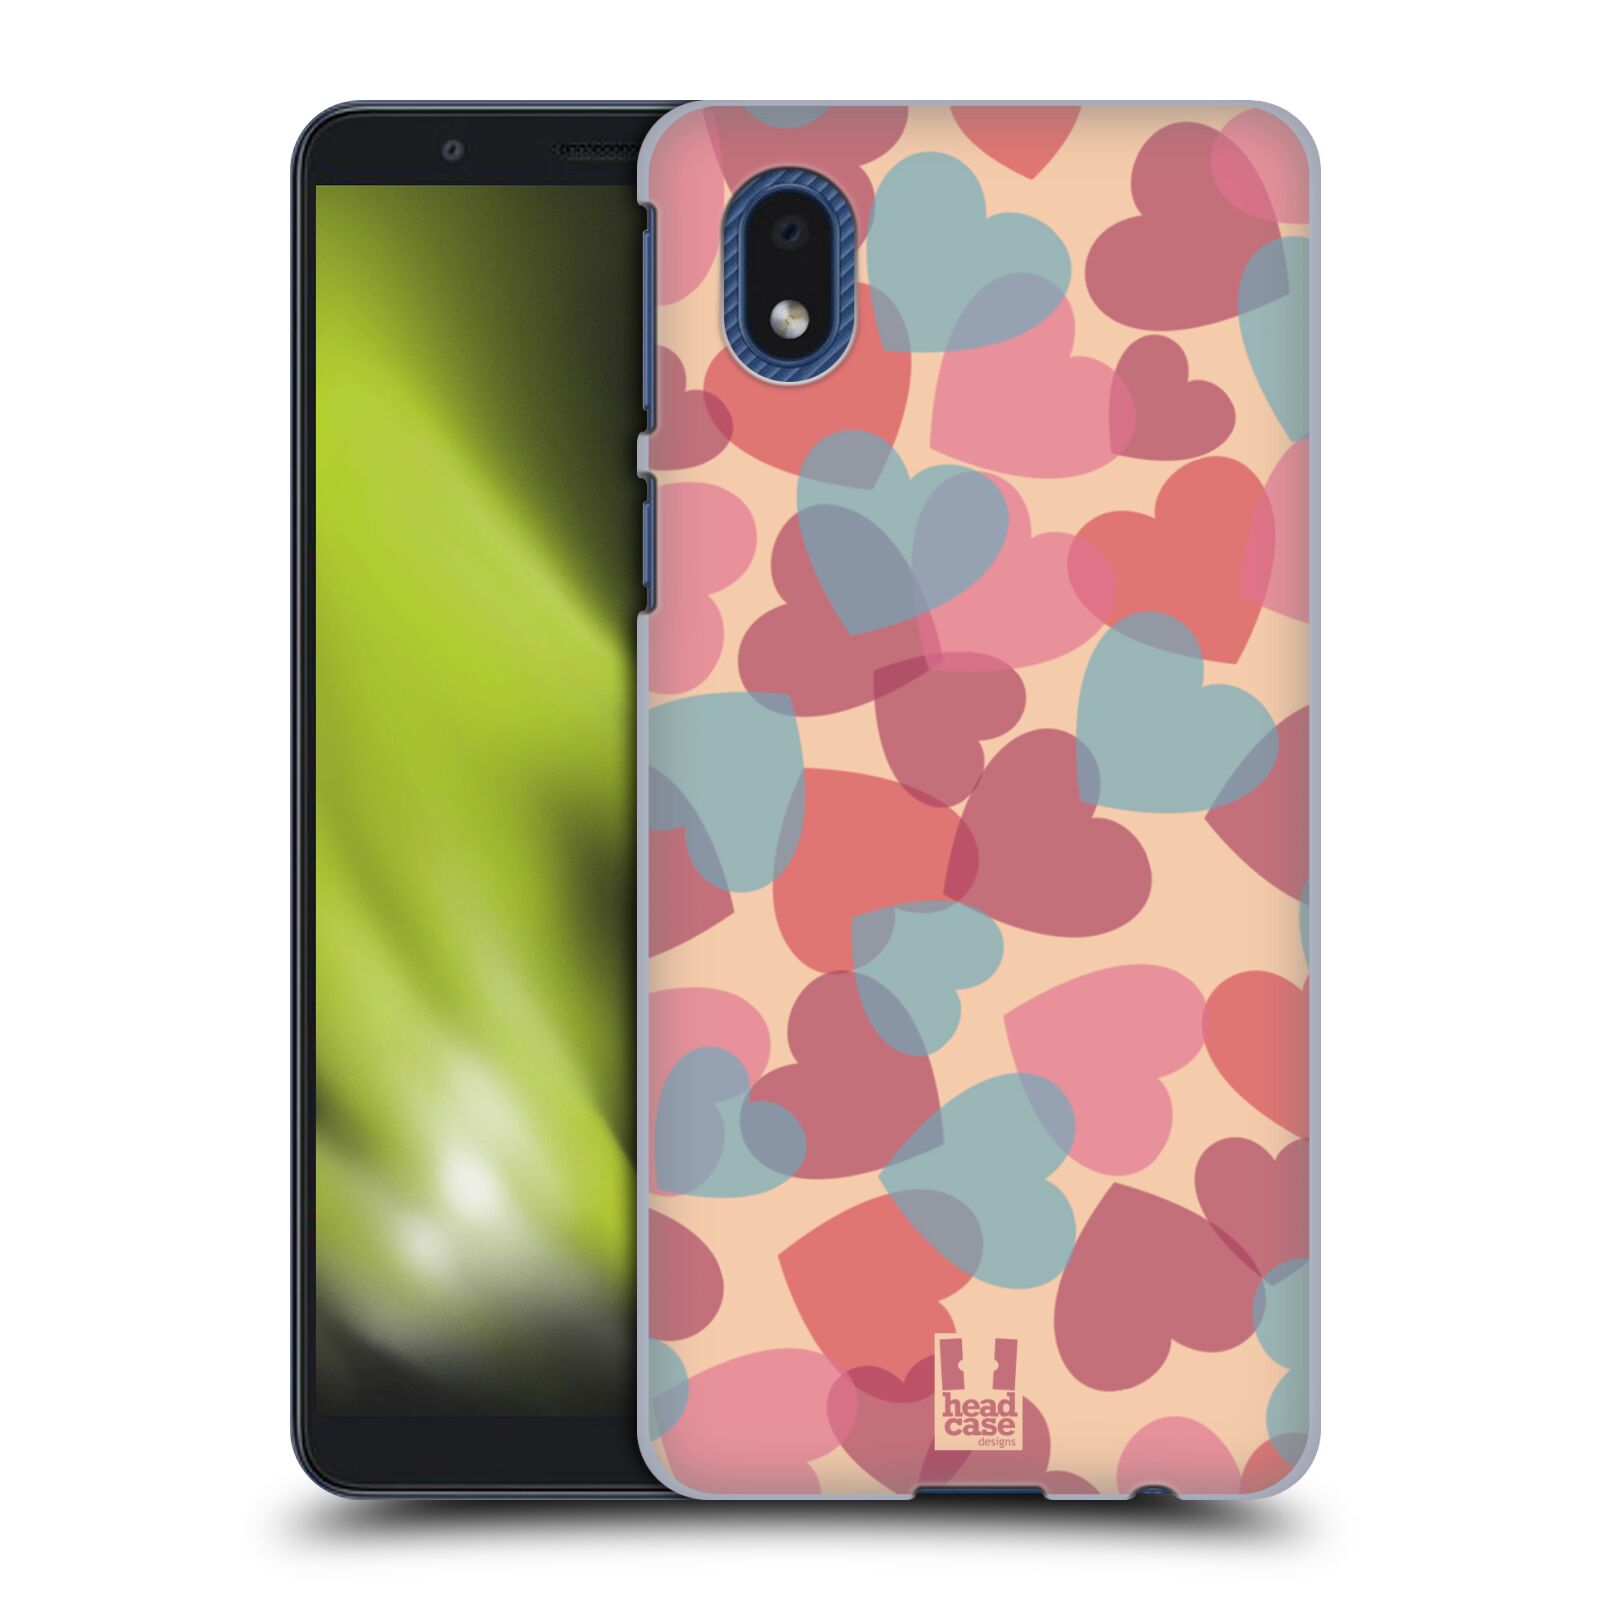 Zadní obal pro mobil Samsung Galaxy A01 CORE - HEAD CASE - Růžová srdíčka kreslený vzor